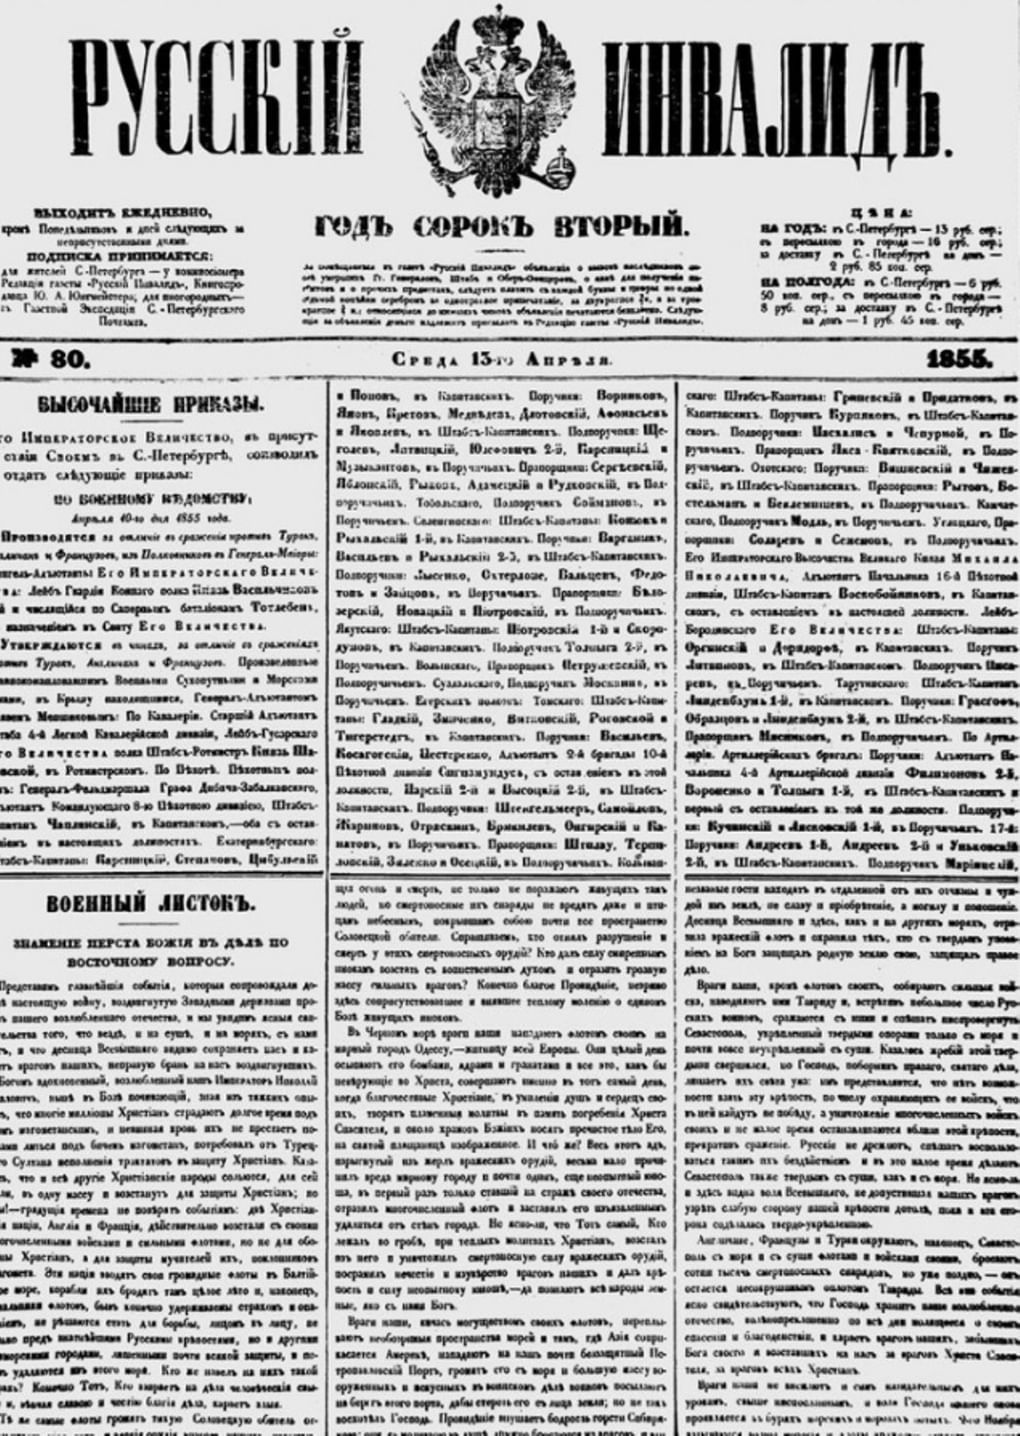 Первая полоса газеты «Русский инвалид». 1855 год. Фотография: wikimedia.org